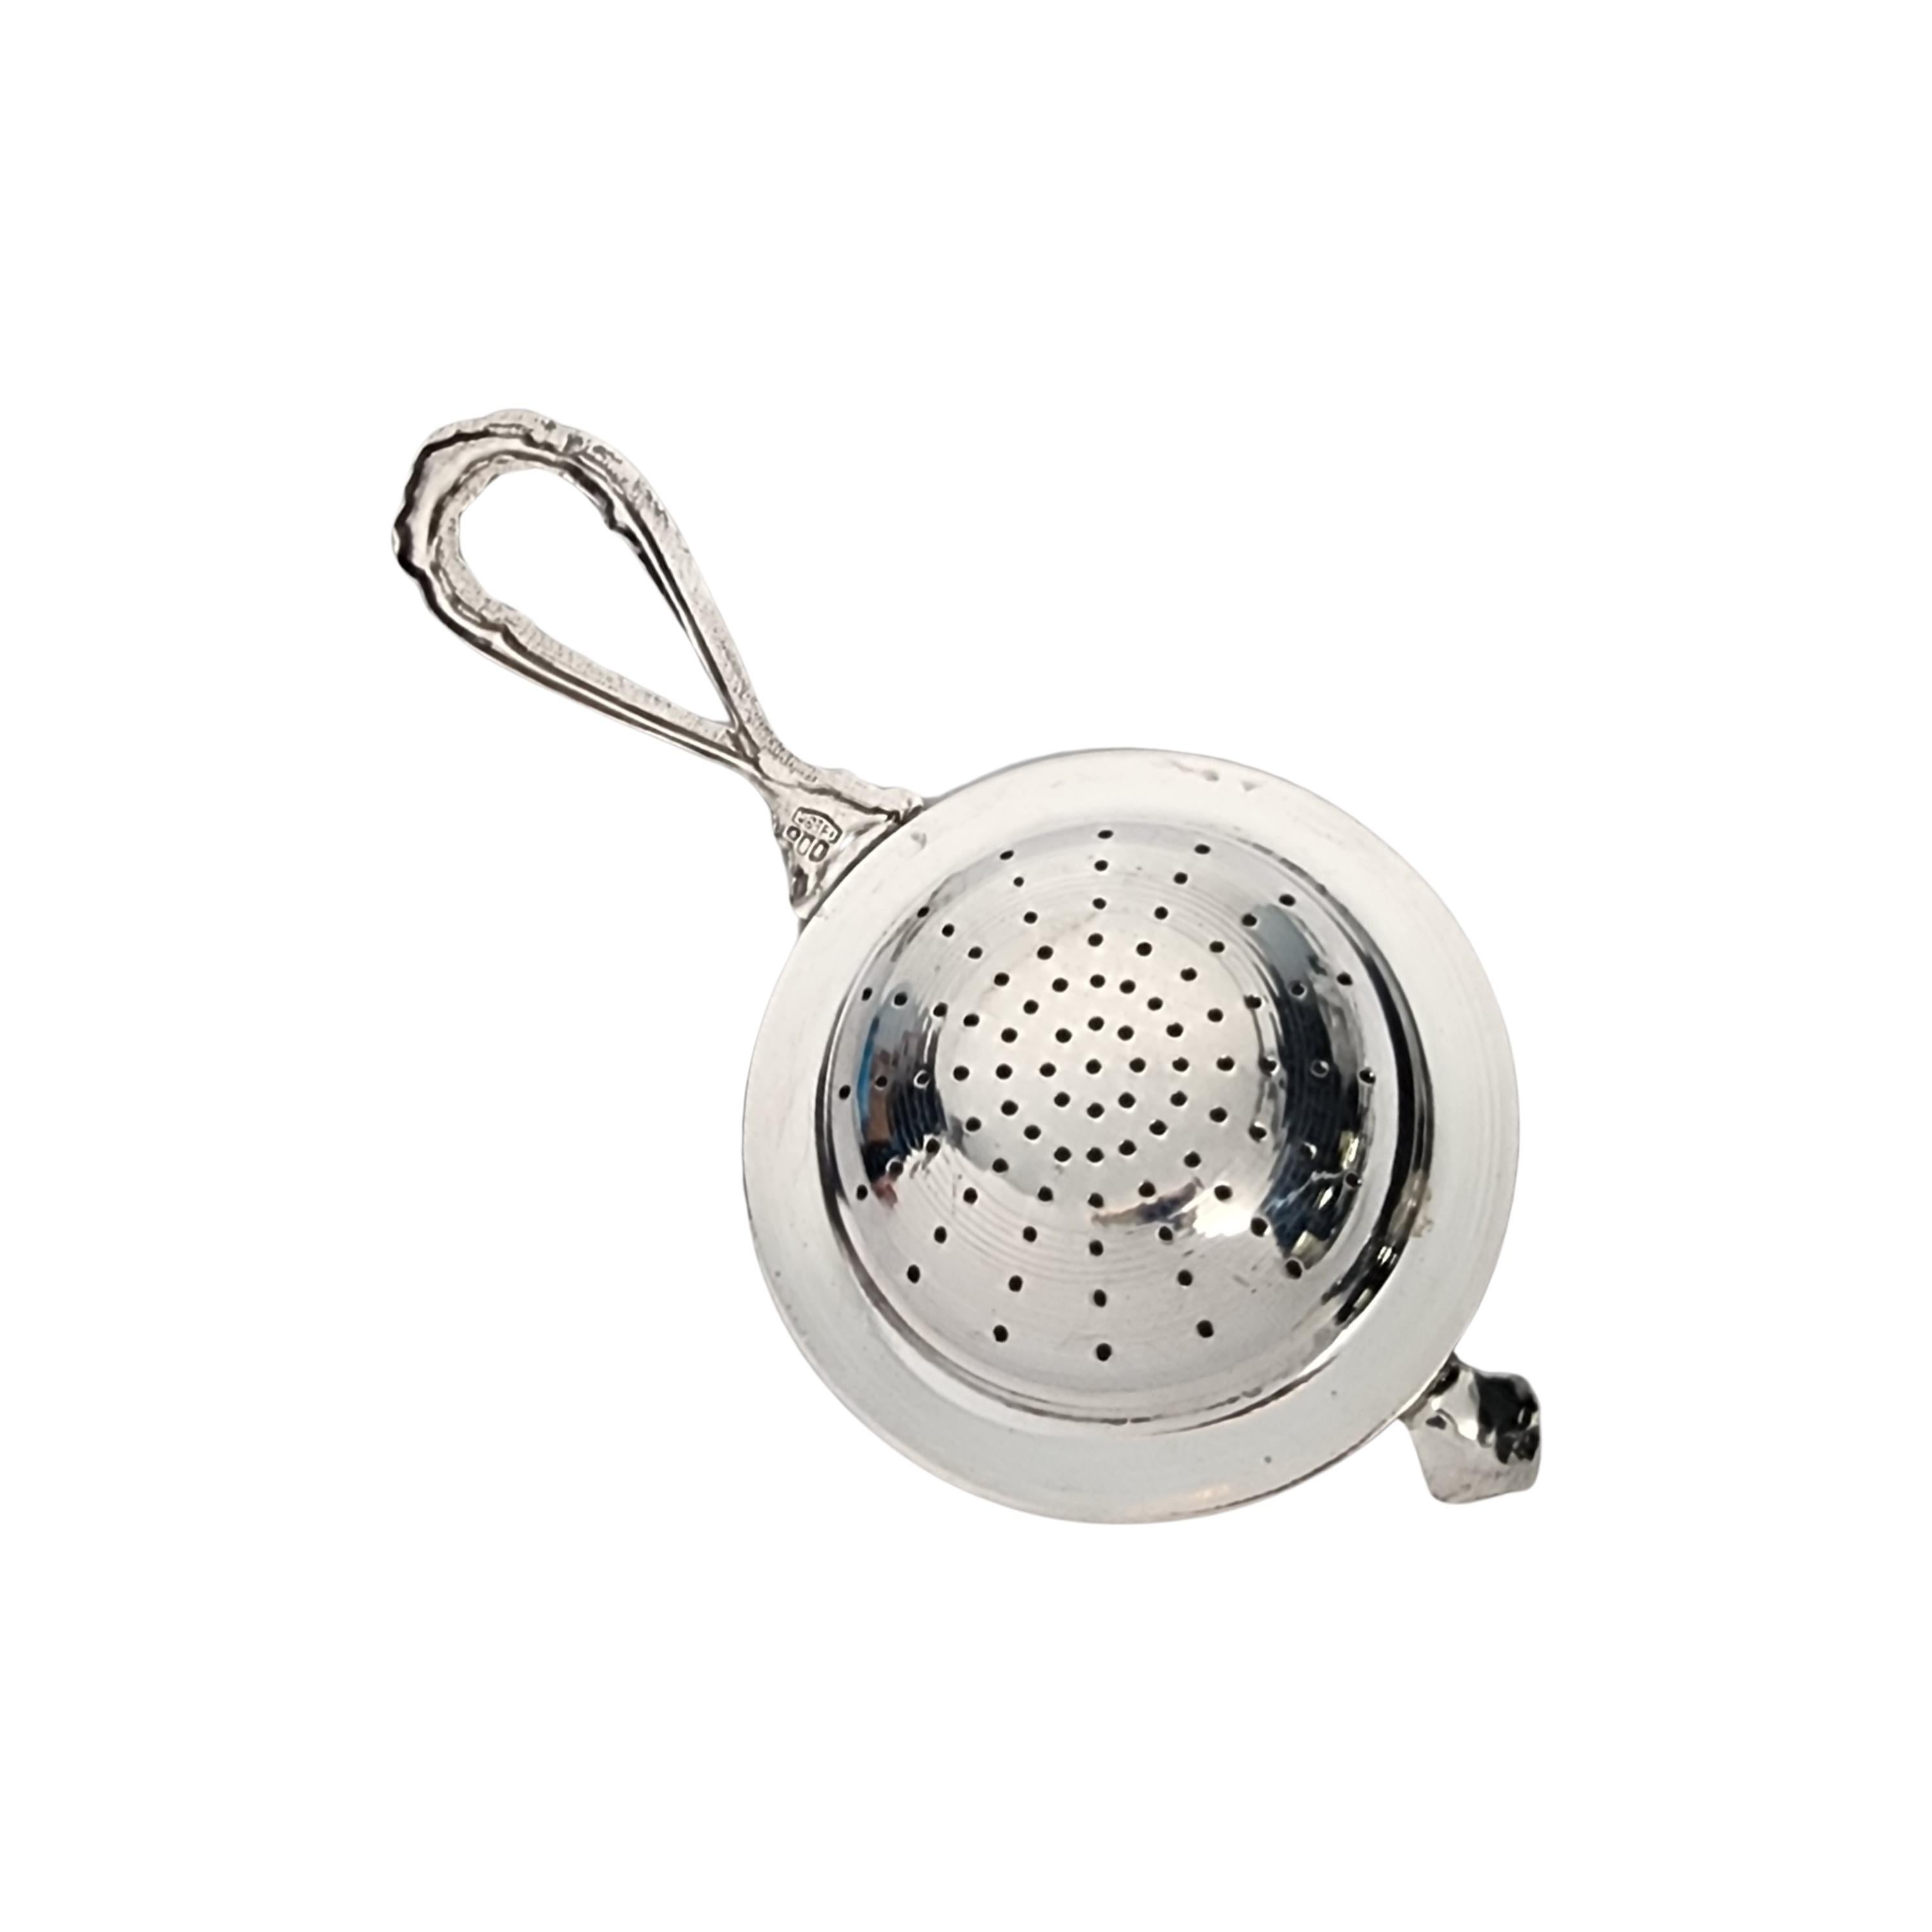 Vintage 800 silver tea strainer by Brandimarte Italy.

Cette passoire à thé est dotée d'une poignée à boucle ouverte surmontée d'une rose et d'un bord en corde autour du bol percé.

Mesure environ 4 5/8